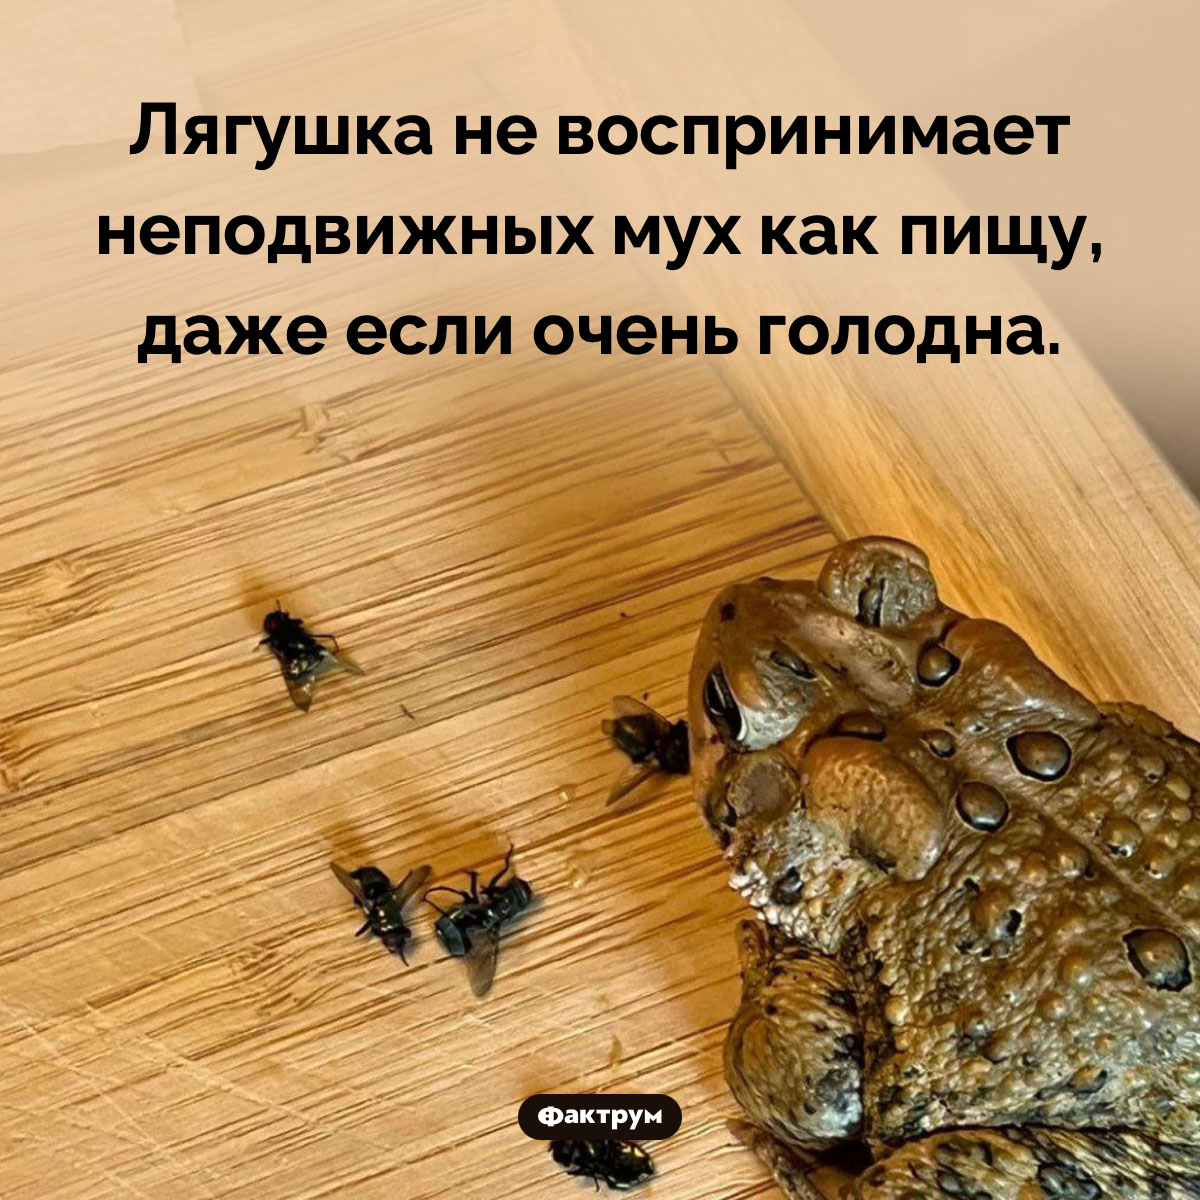 Лягушка не охотится на неподвижных мух. Лягушка не воспринимает неподвижных мух как пищу, даже если очень голодна.